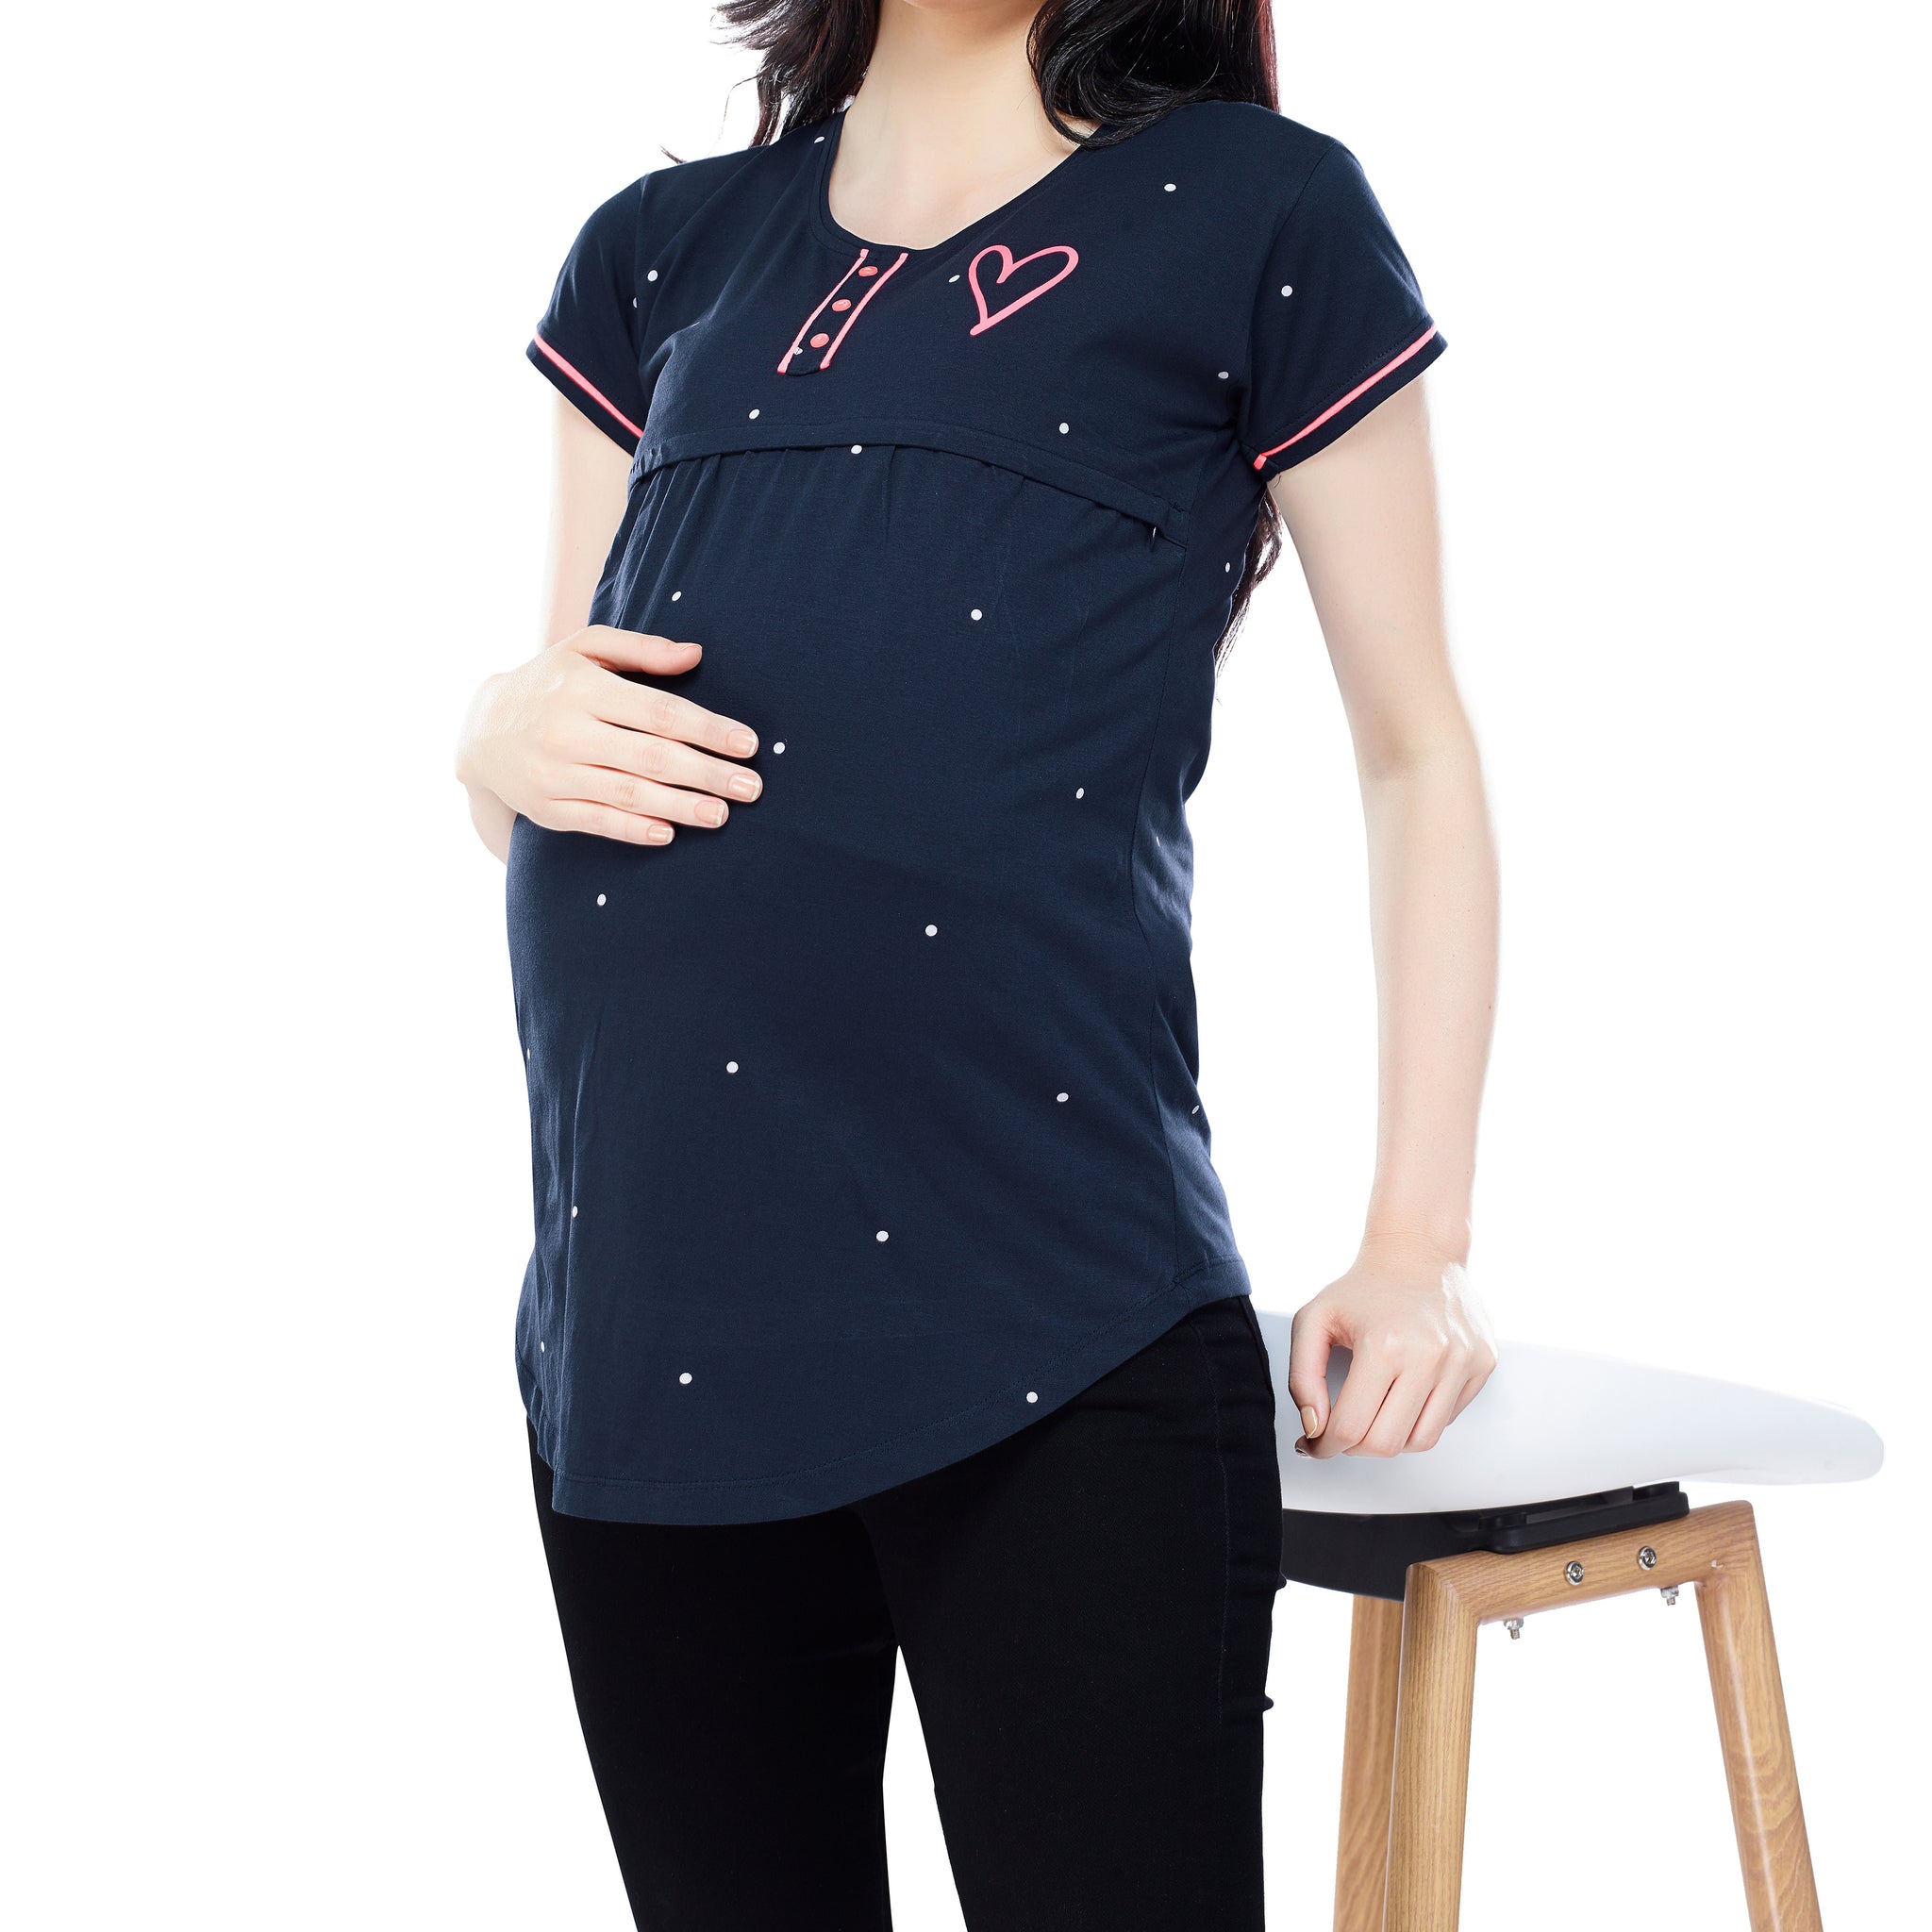 ZEYO Women Cotton Navy Blue Dot Print Maternity & Feeding Top